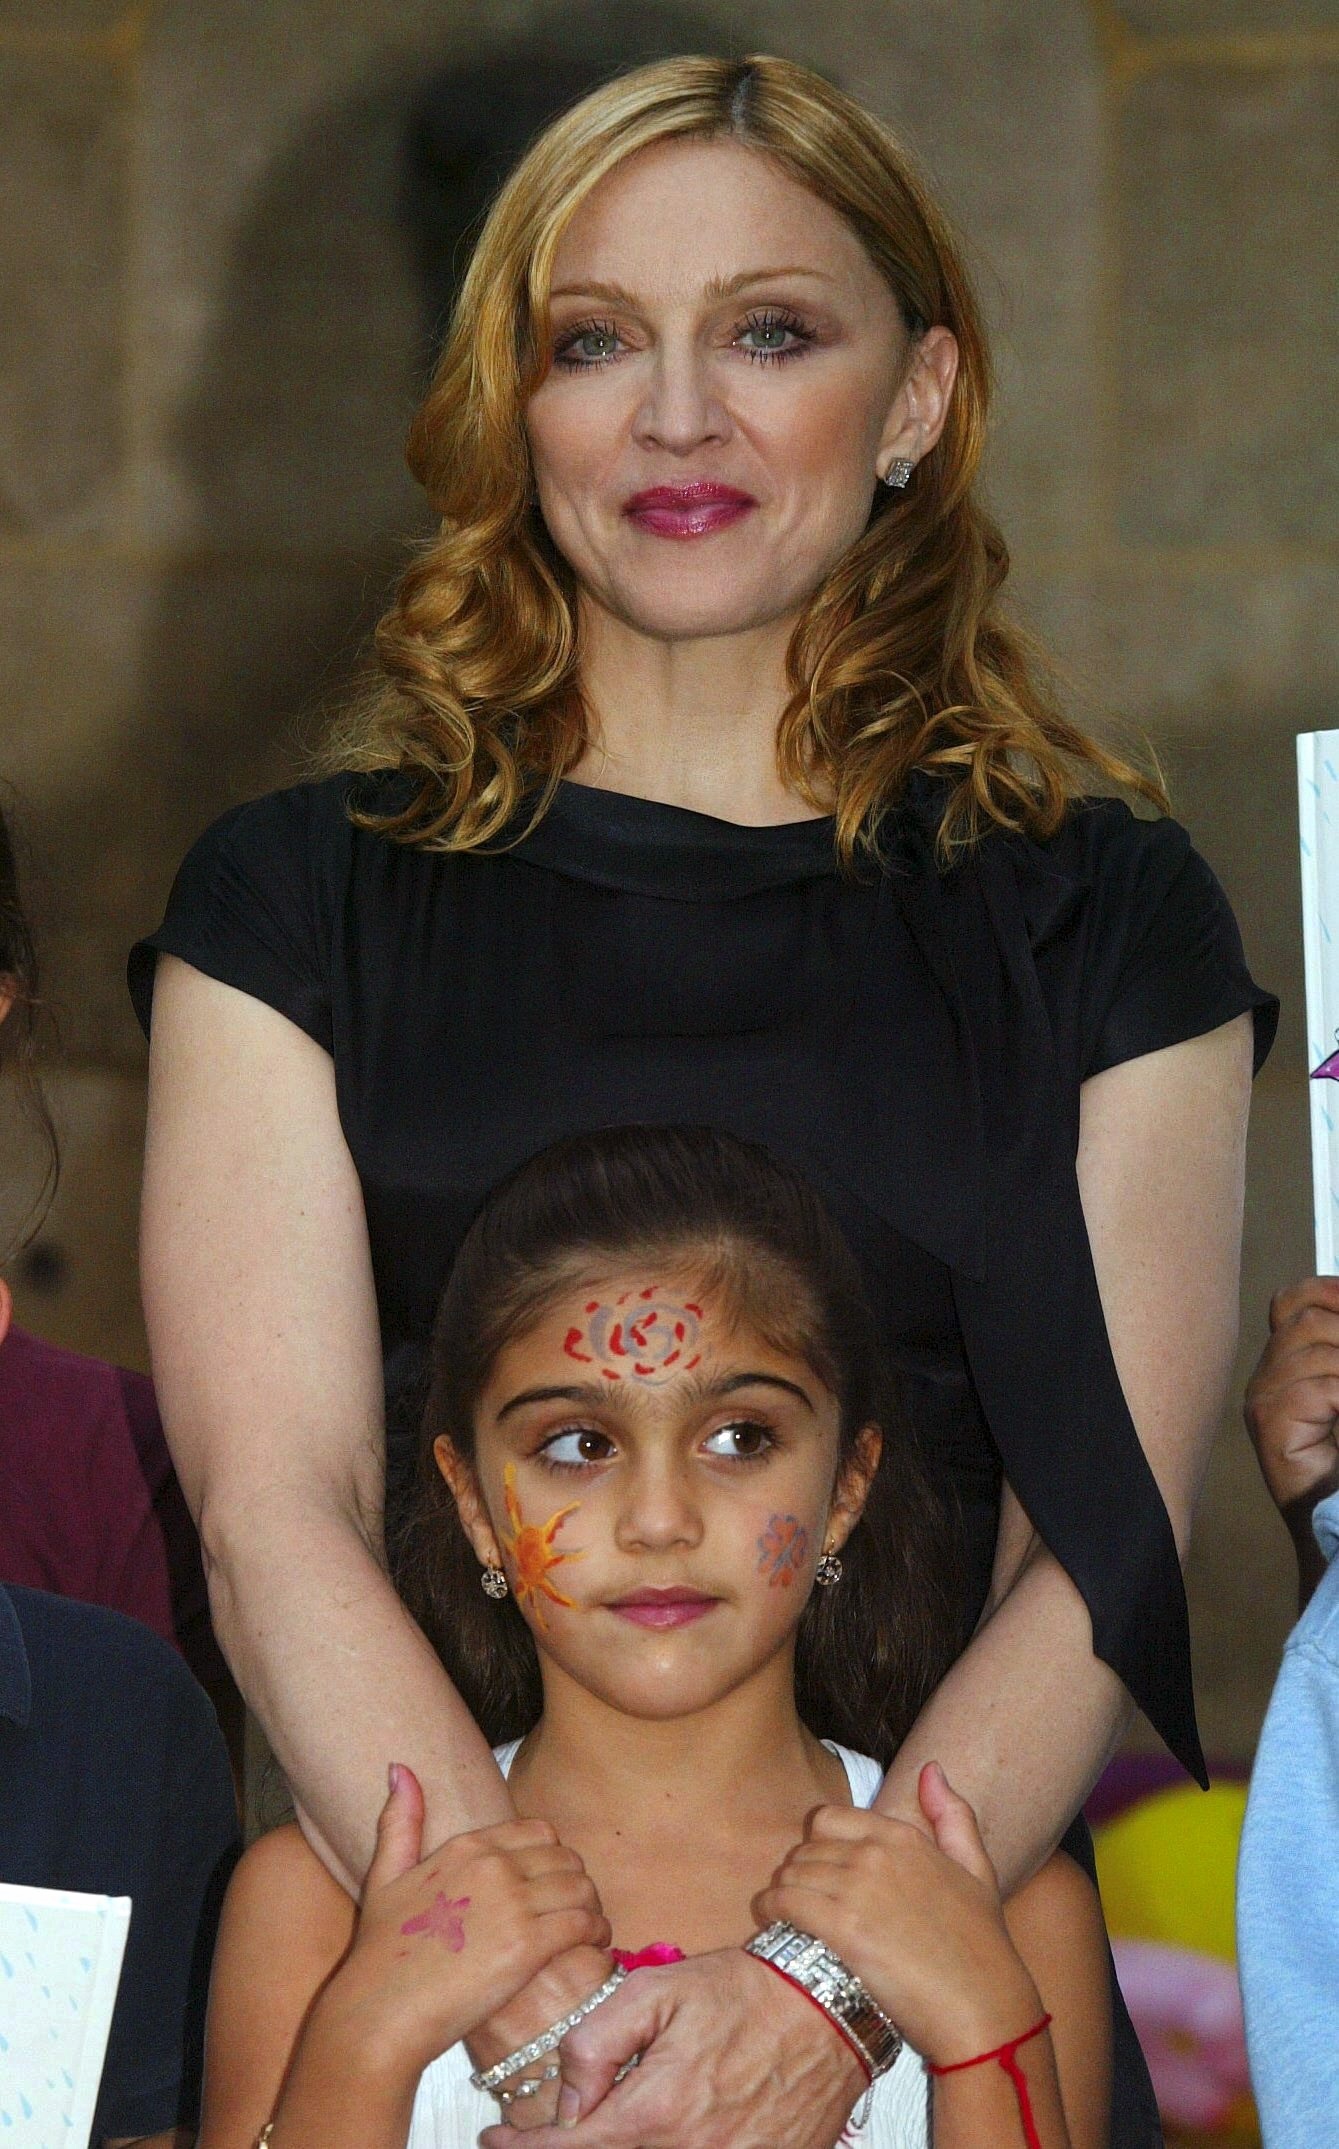 Madonna con su hija Lourdes "Lola" Leon el 15 de septiembre de 2003 en París, Francia | Foto: Getty Images